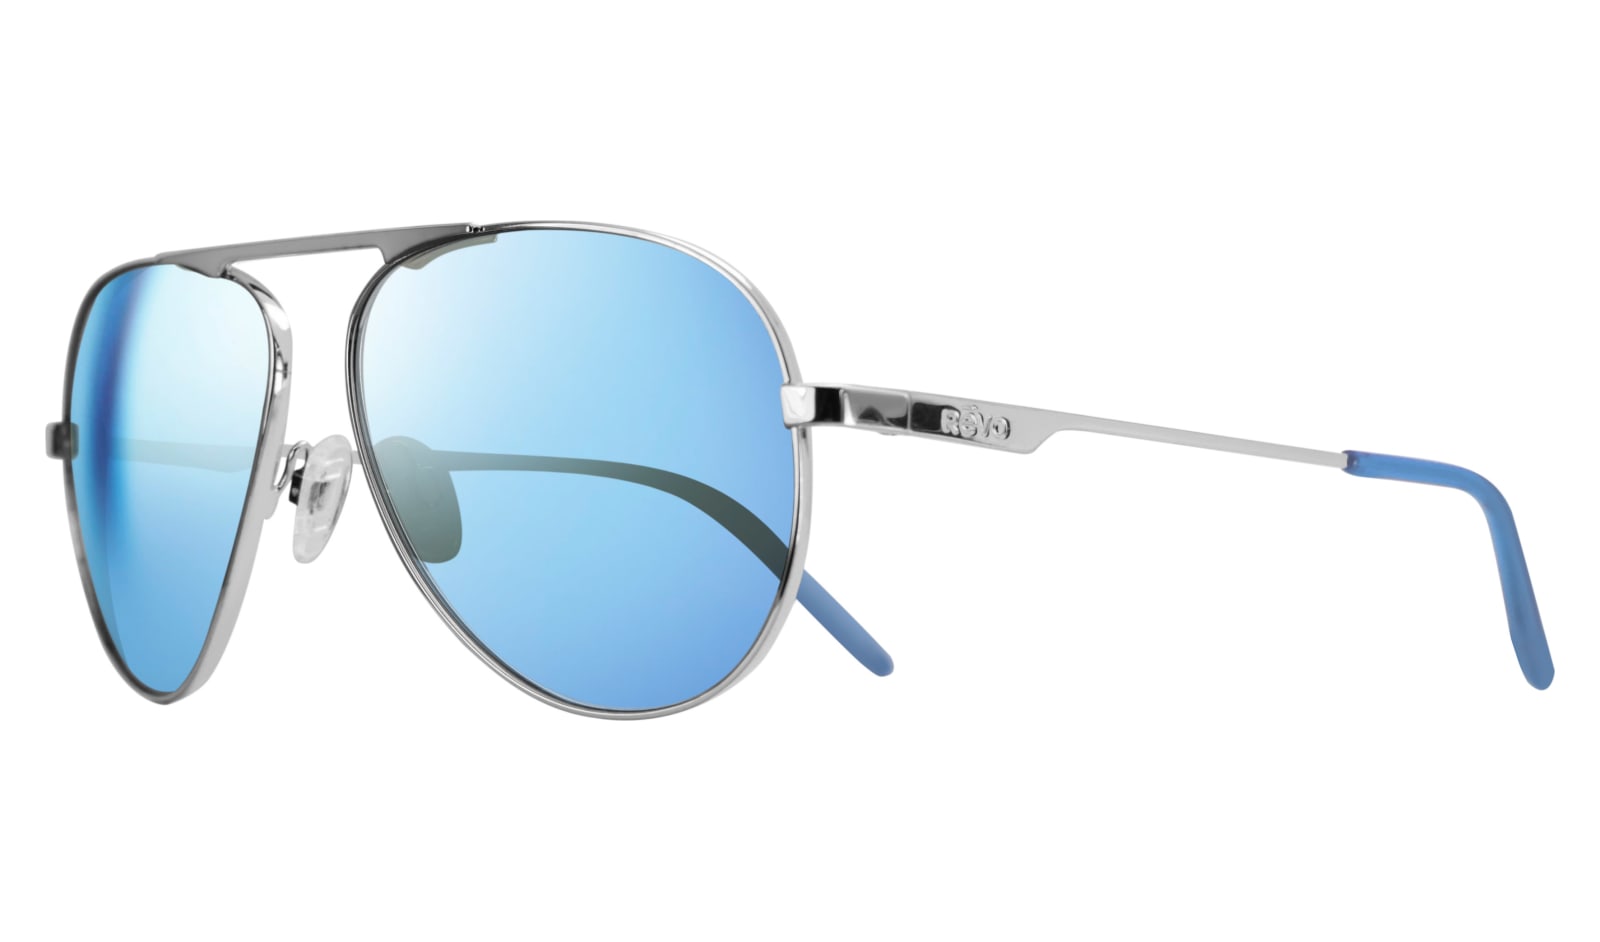 BluWater Polarized Babe 3 Sunglasses